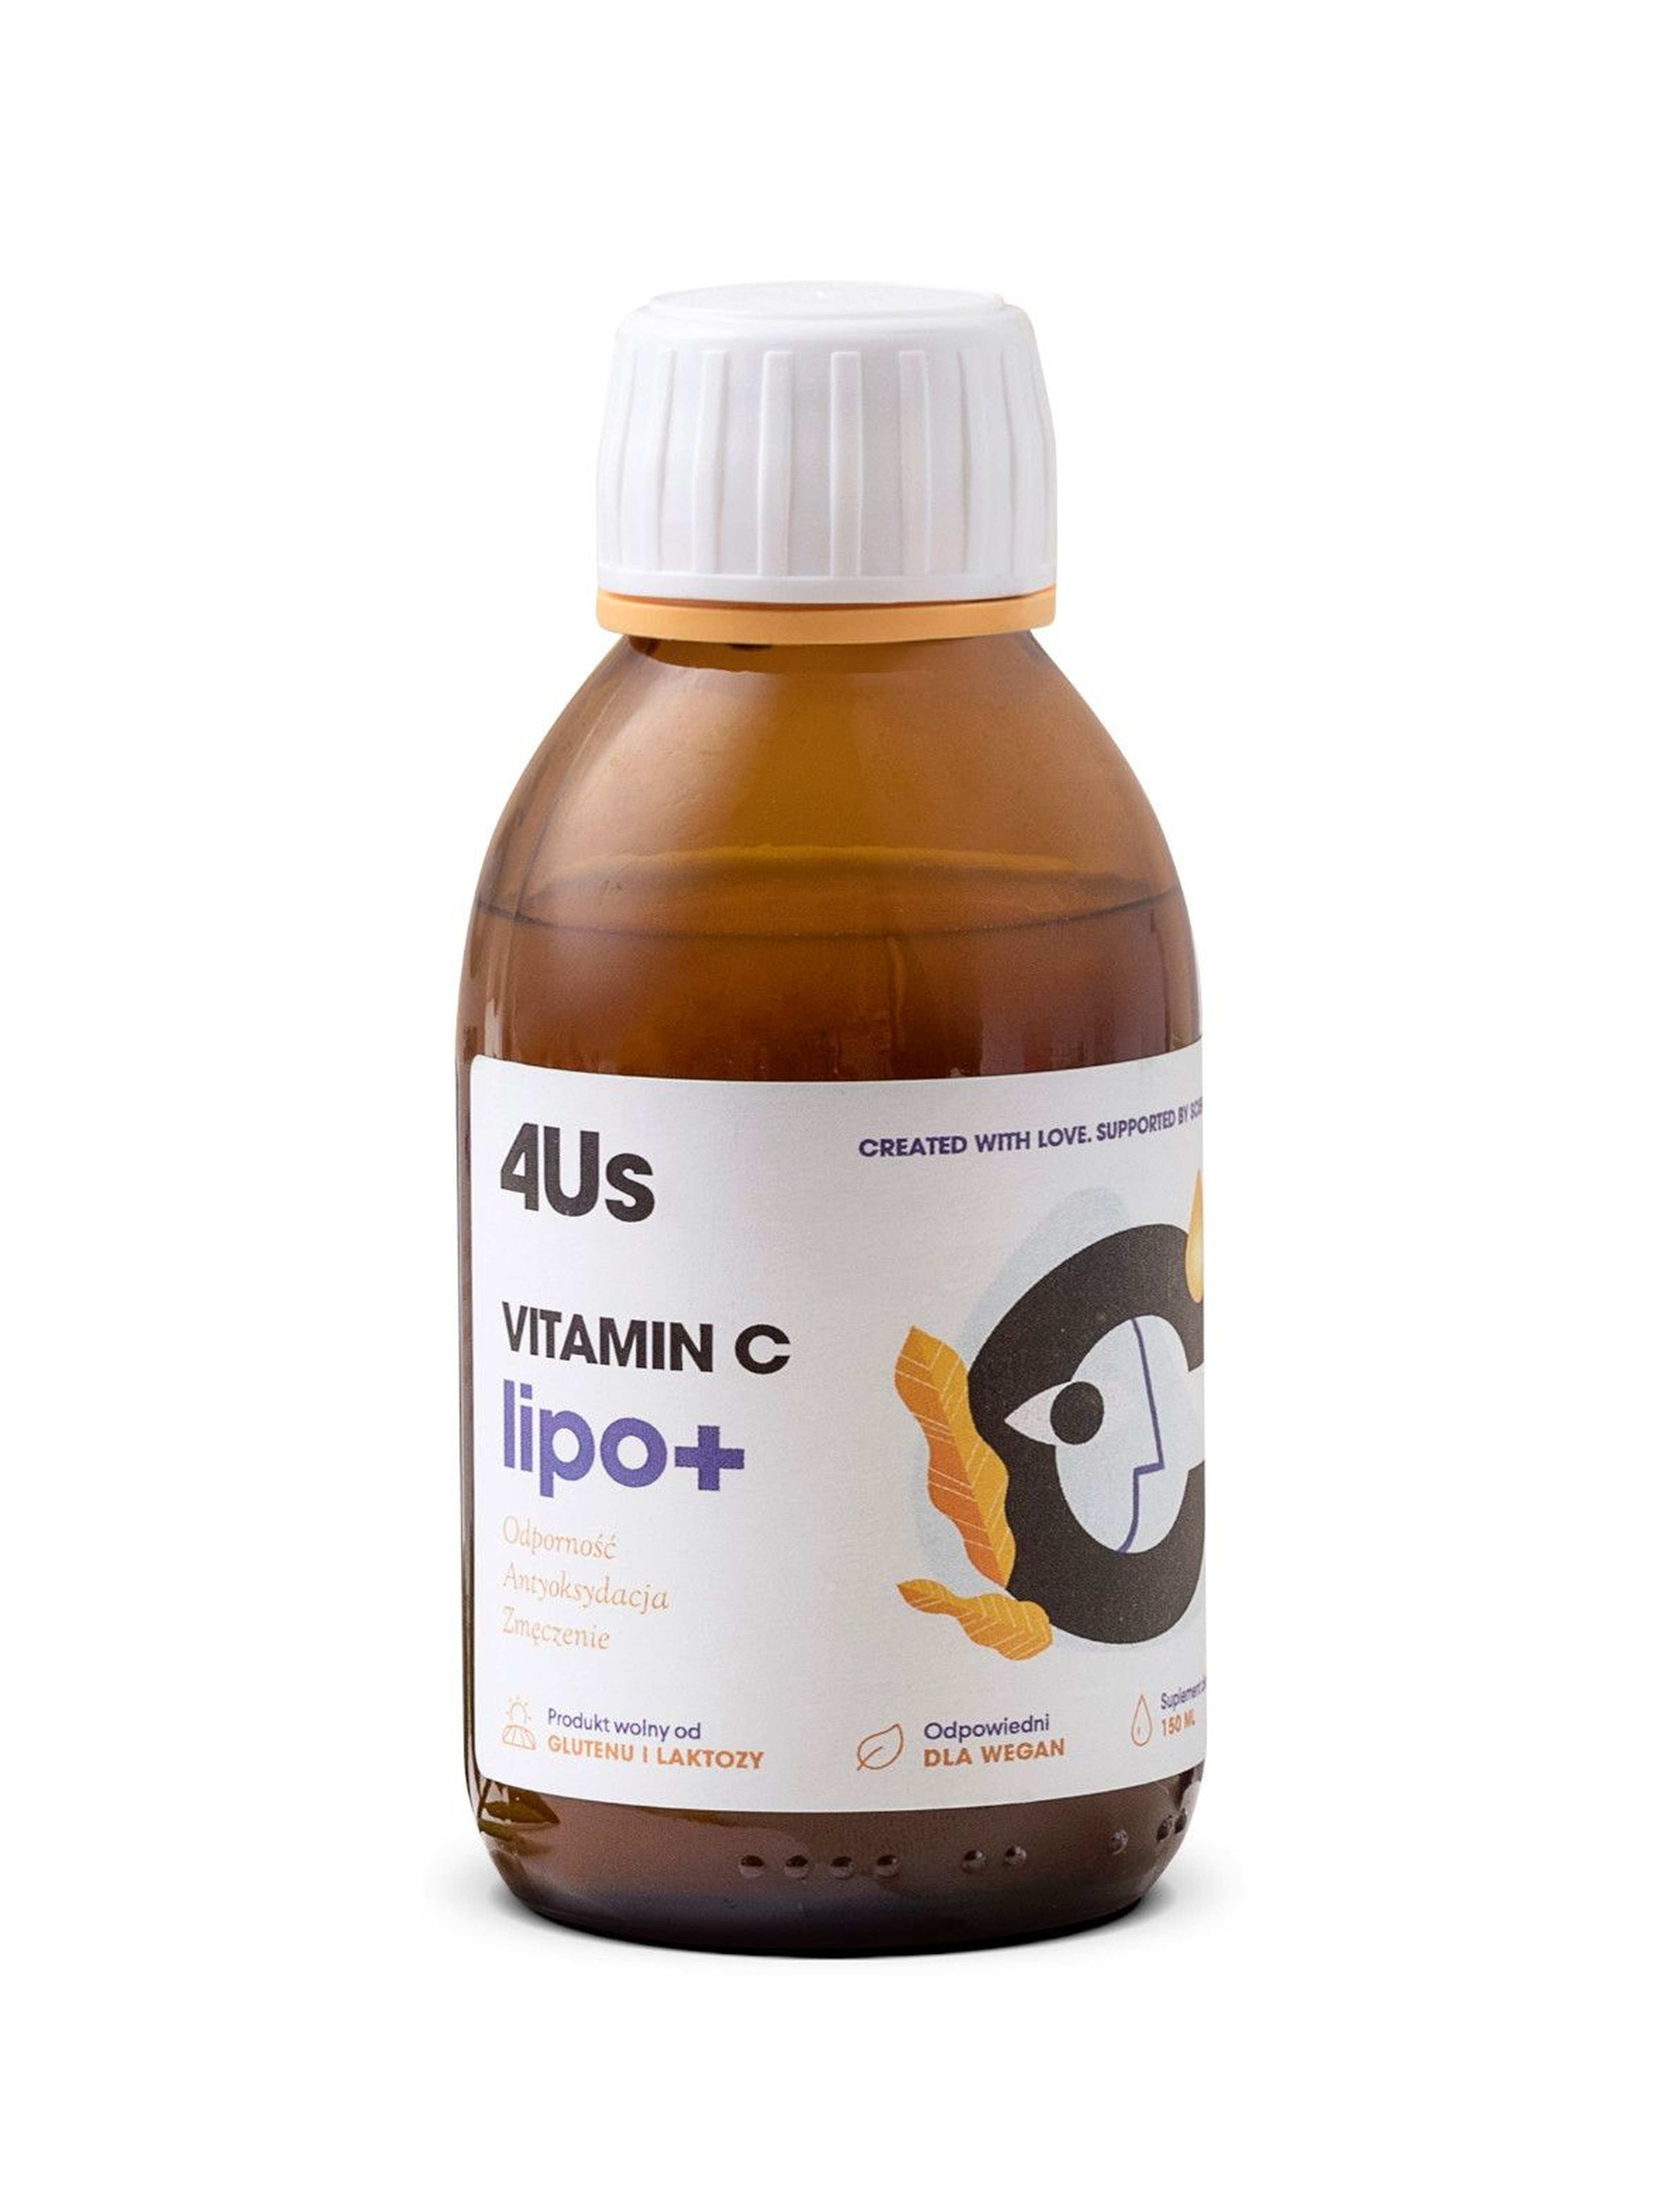 HealthLabs VITAMIN C lipo+ Liposomalna 4Us -  150ml